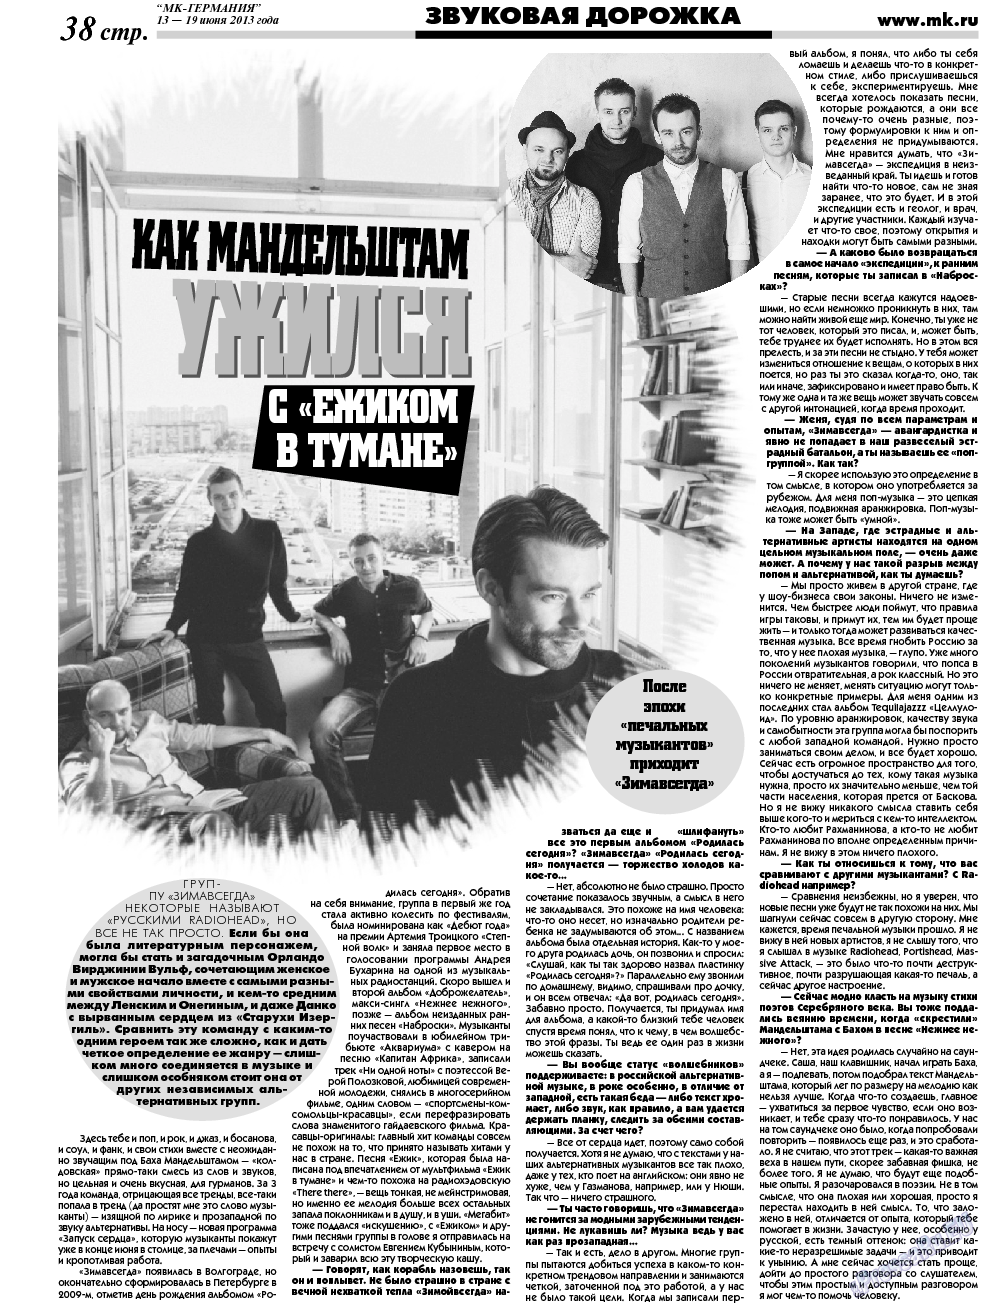 МК-Германия (газета). 2013 год, номер 24, стр. 38